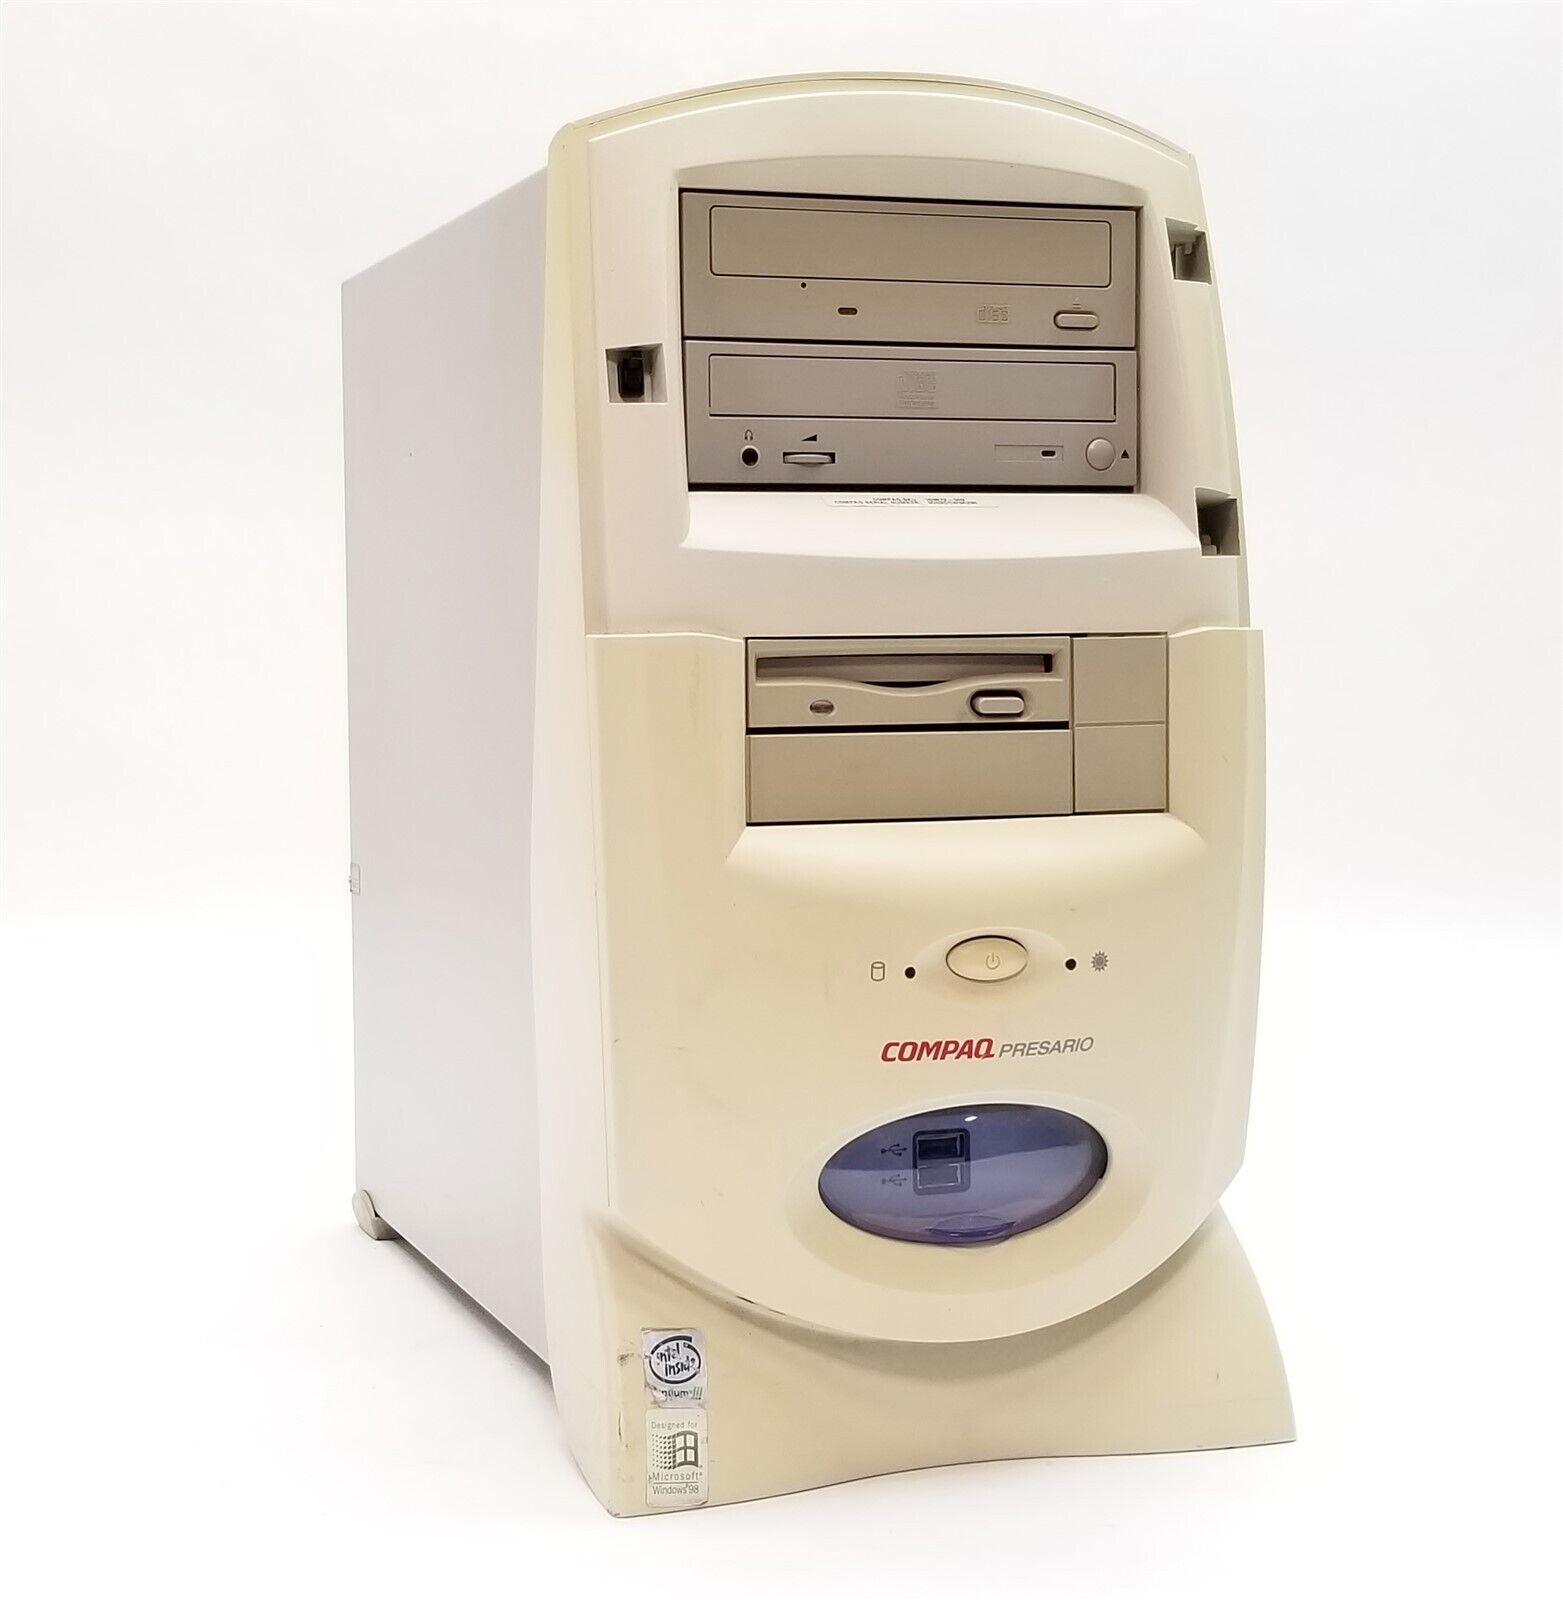 Vintage Compaq Presario CM0900 Tower Pentium III 550MHz 128MB *NO HDD* Retro PC